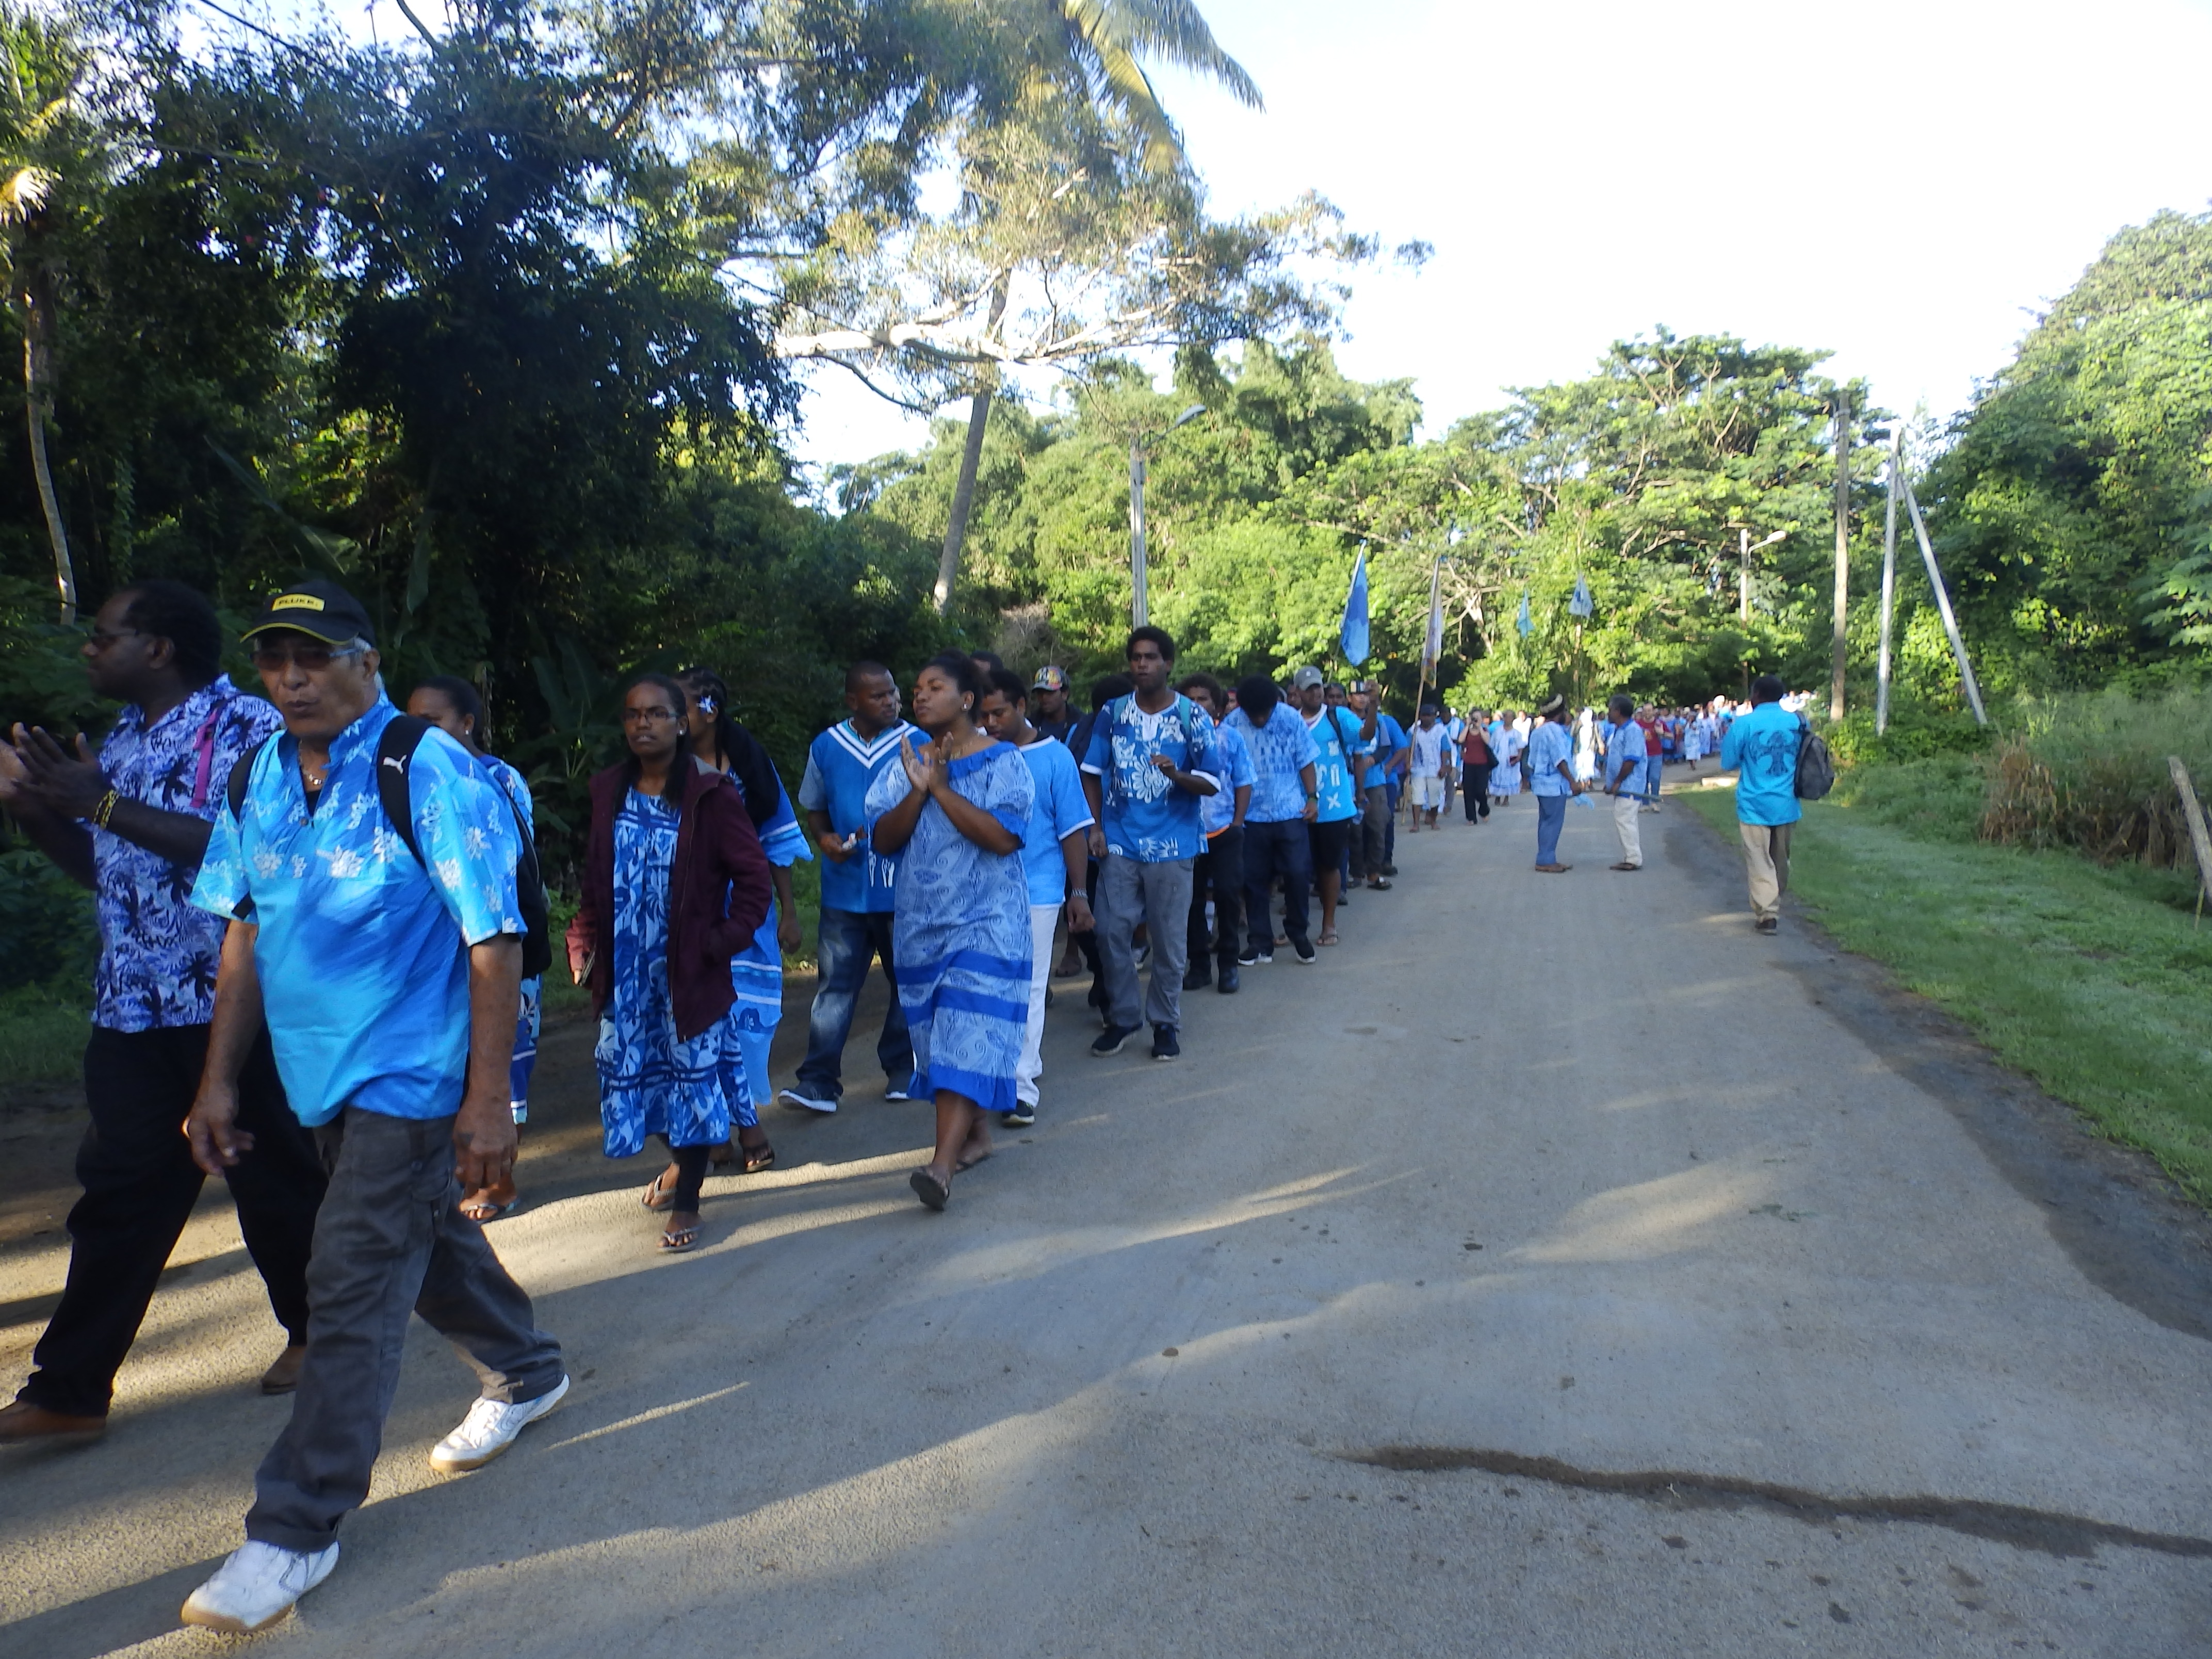 Défilé des délégations vêtues de bleue